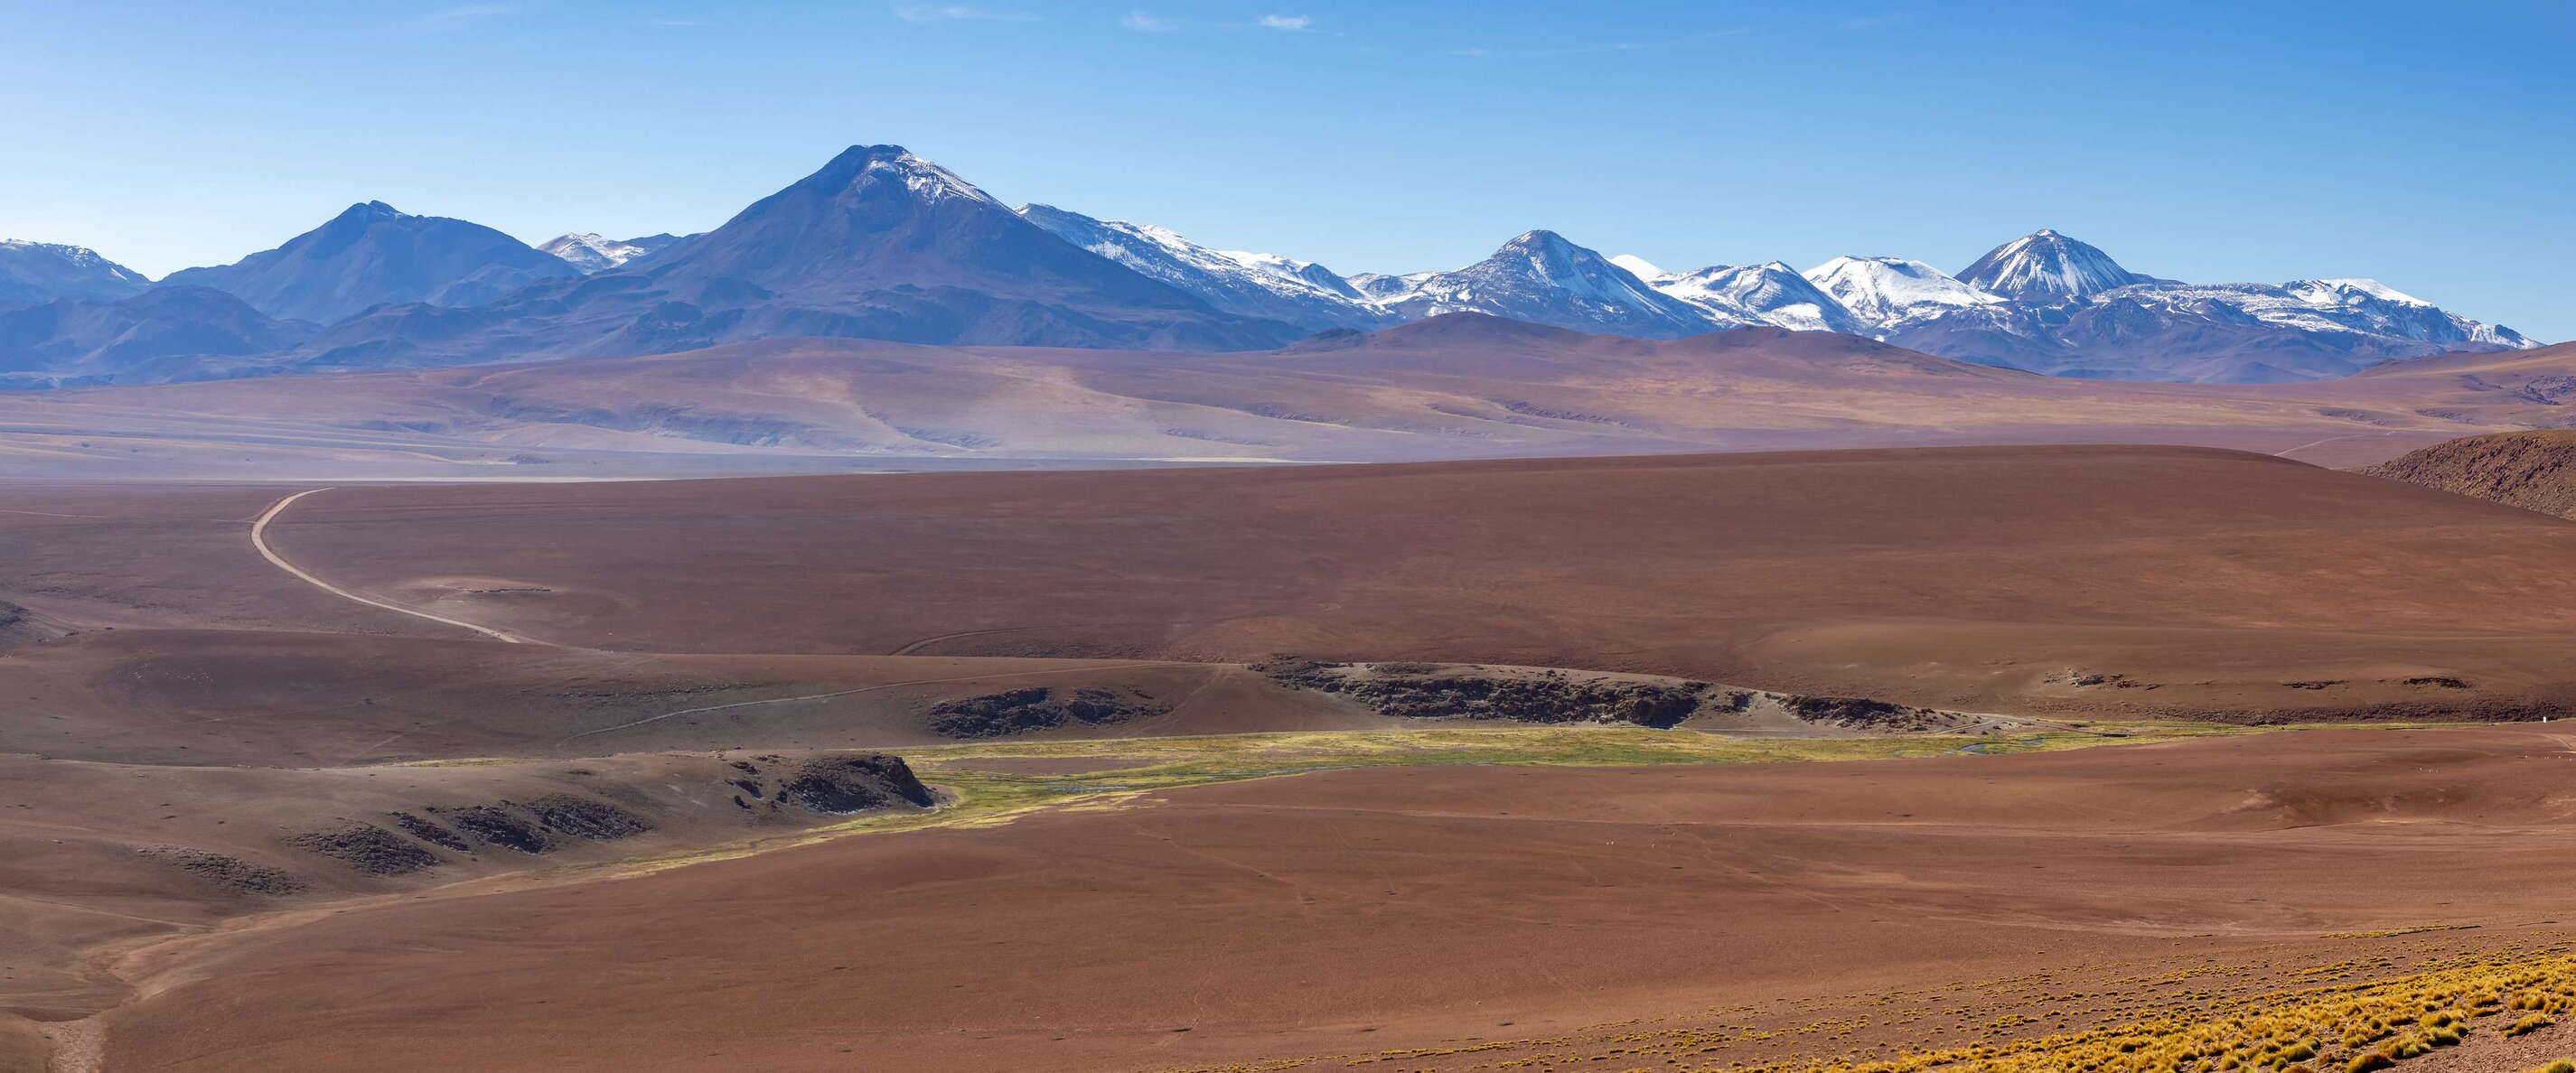 Altiplano with Río de Juana and Cerro Colorado